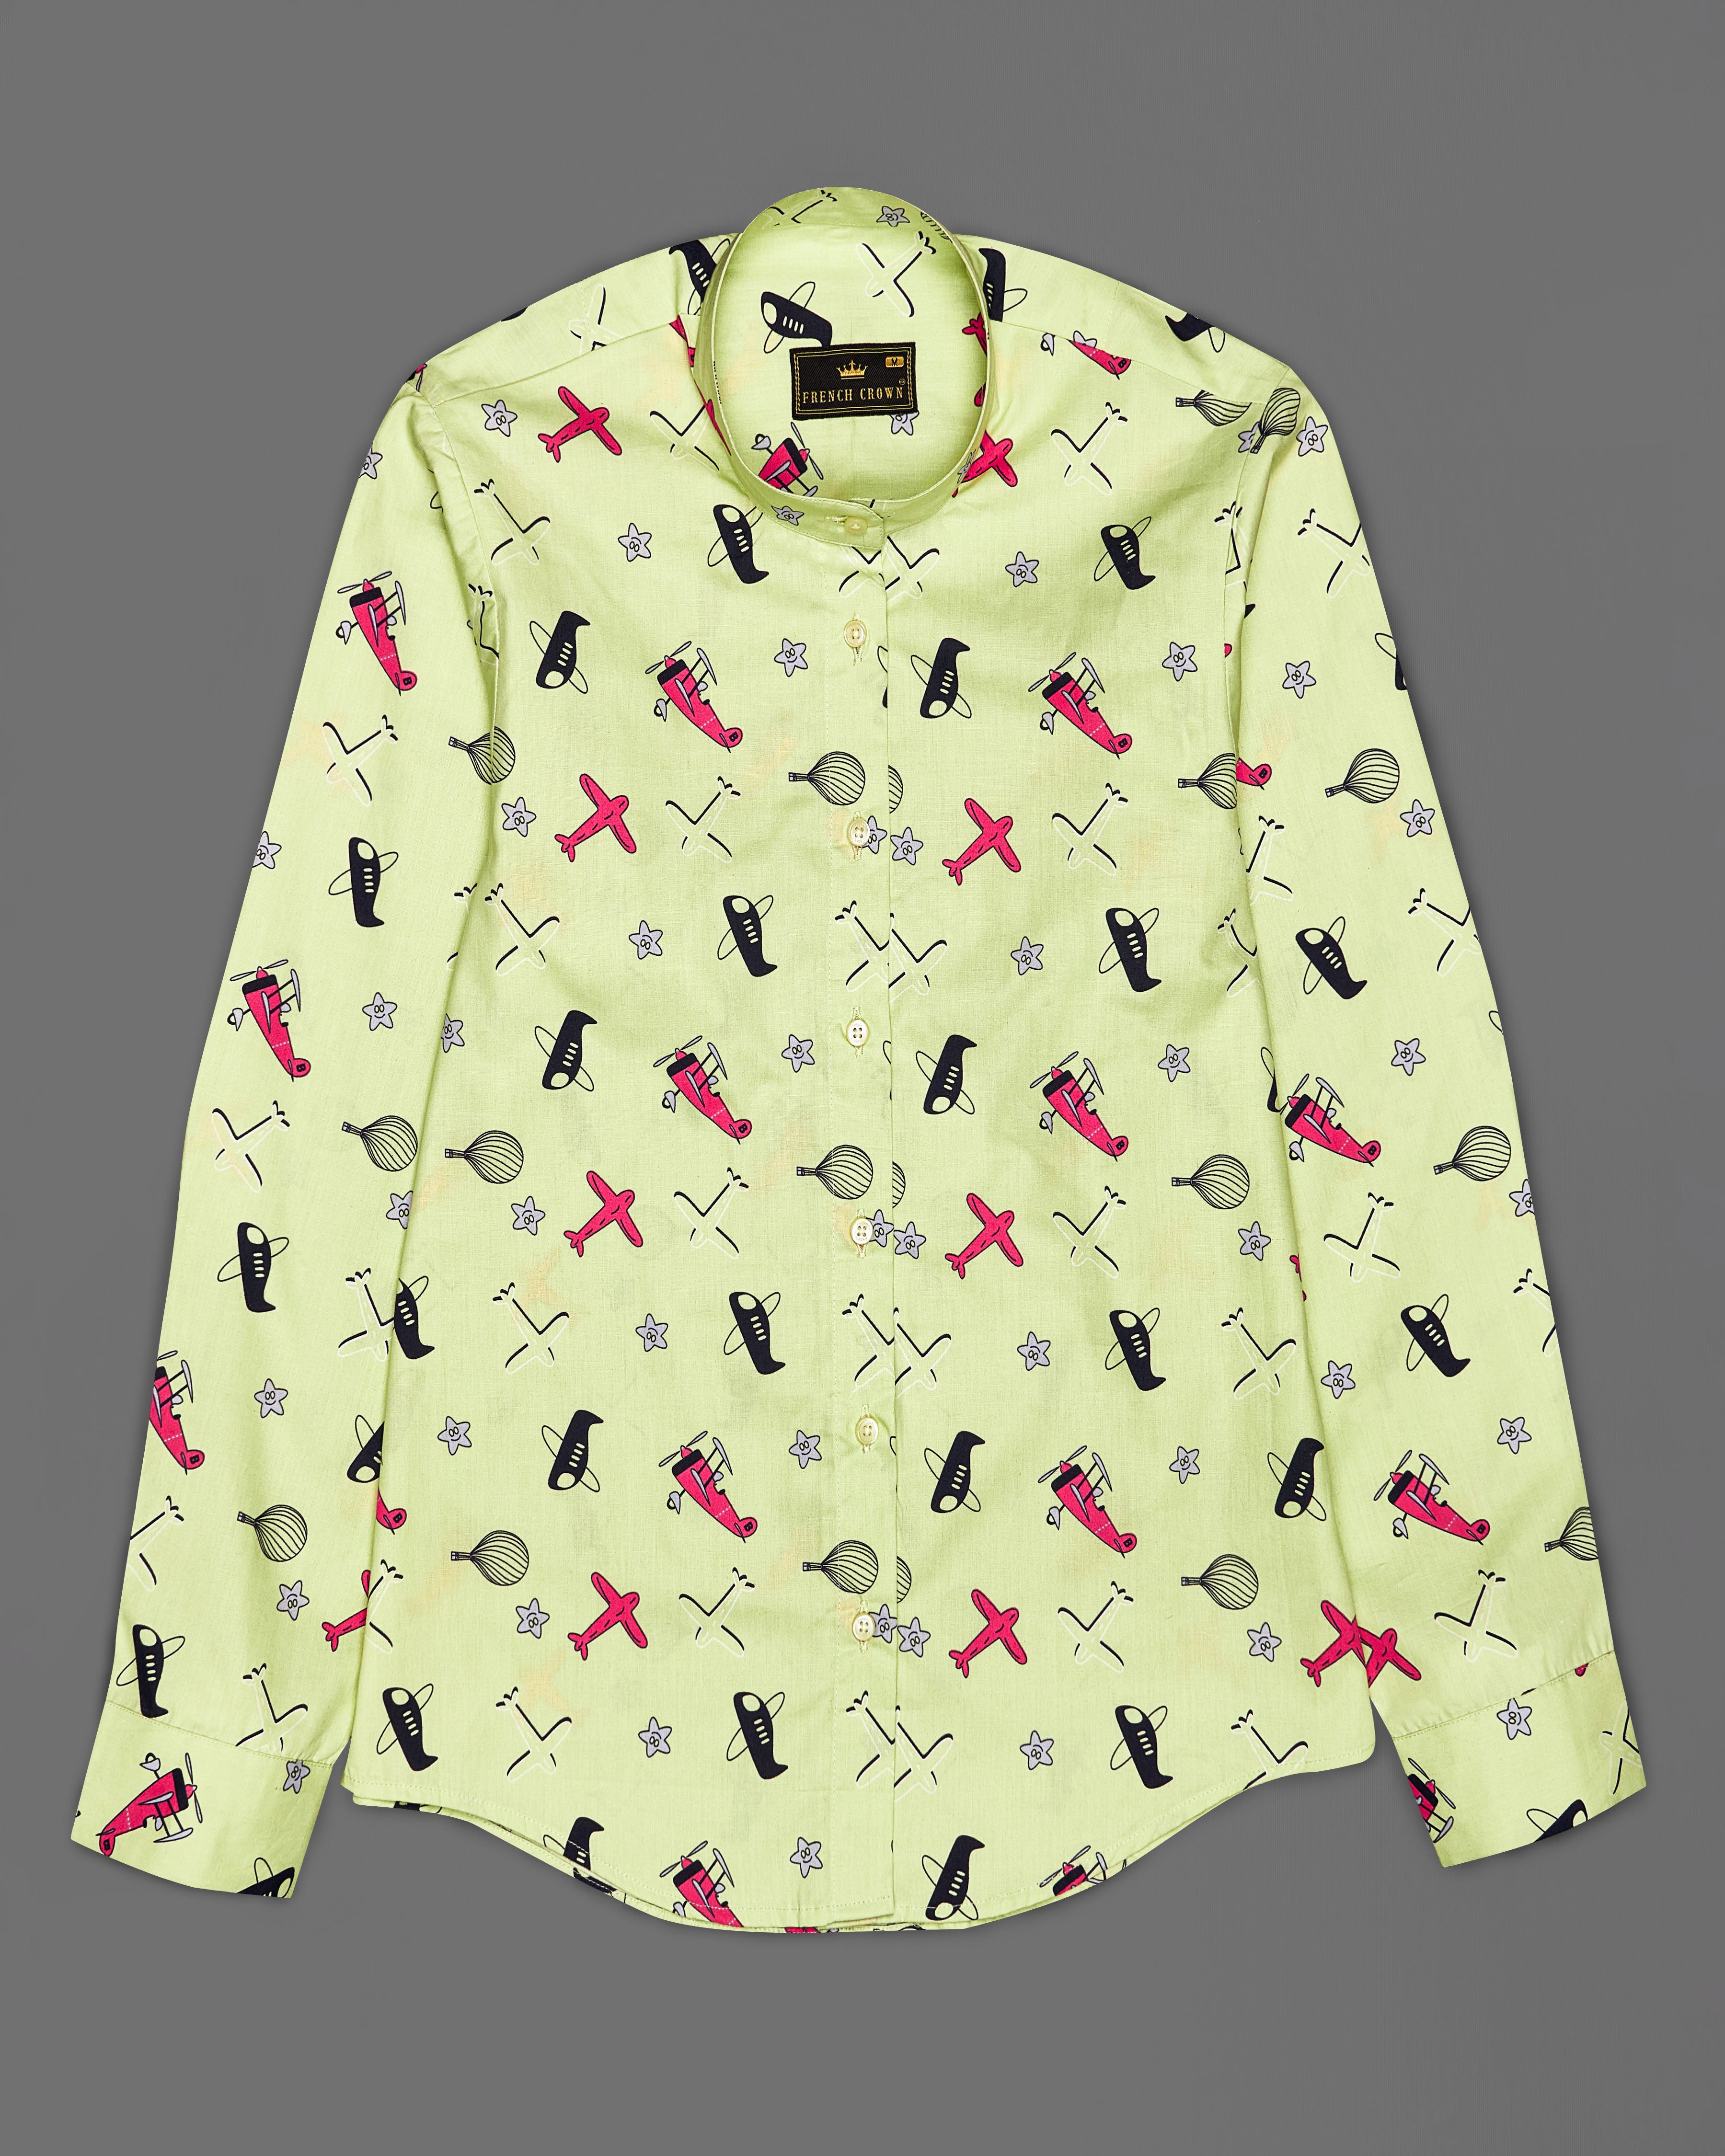 Caper Green Aeroplane Printed Premium Cotton Shirt WS040-M-32, WS040-M-34, WS040-M-36, WS040-M-38, WS040-M-40, WS040-M-42